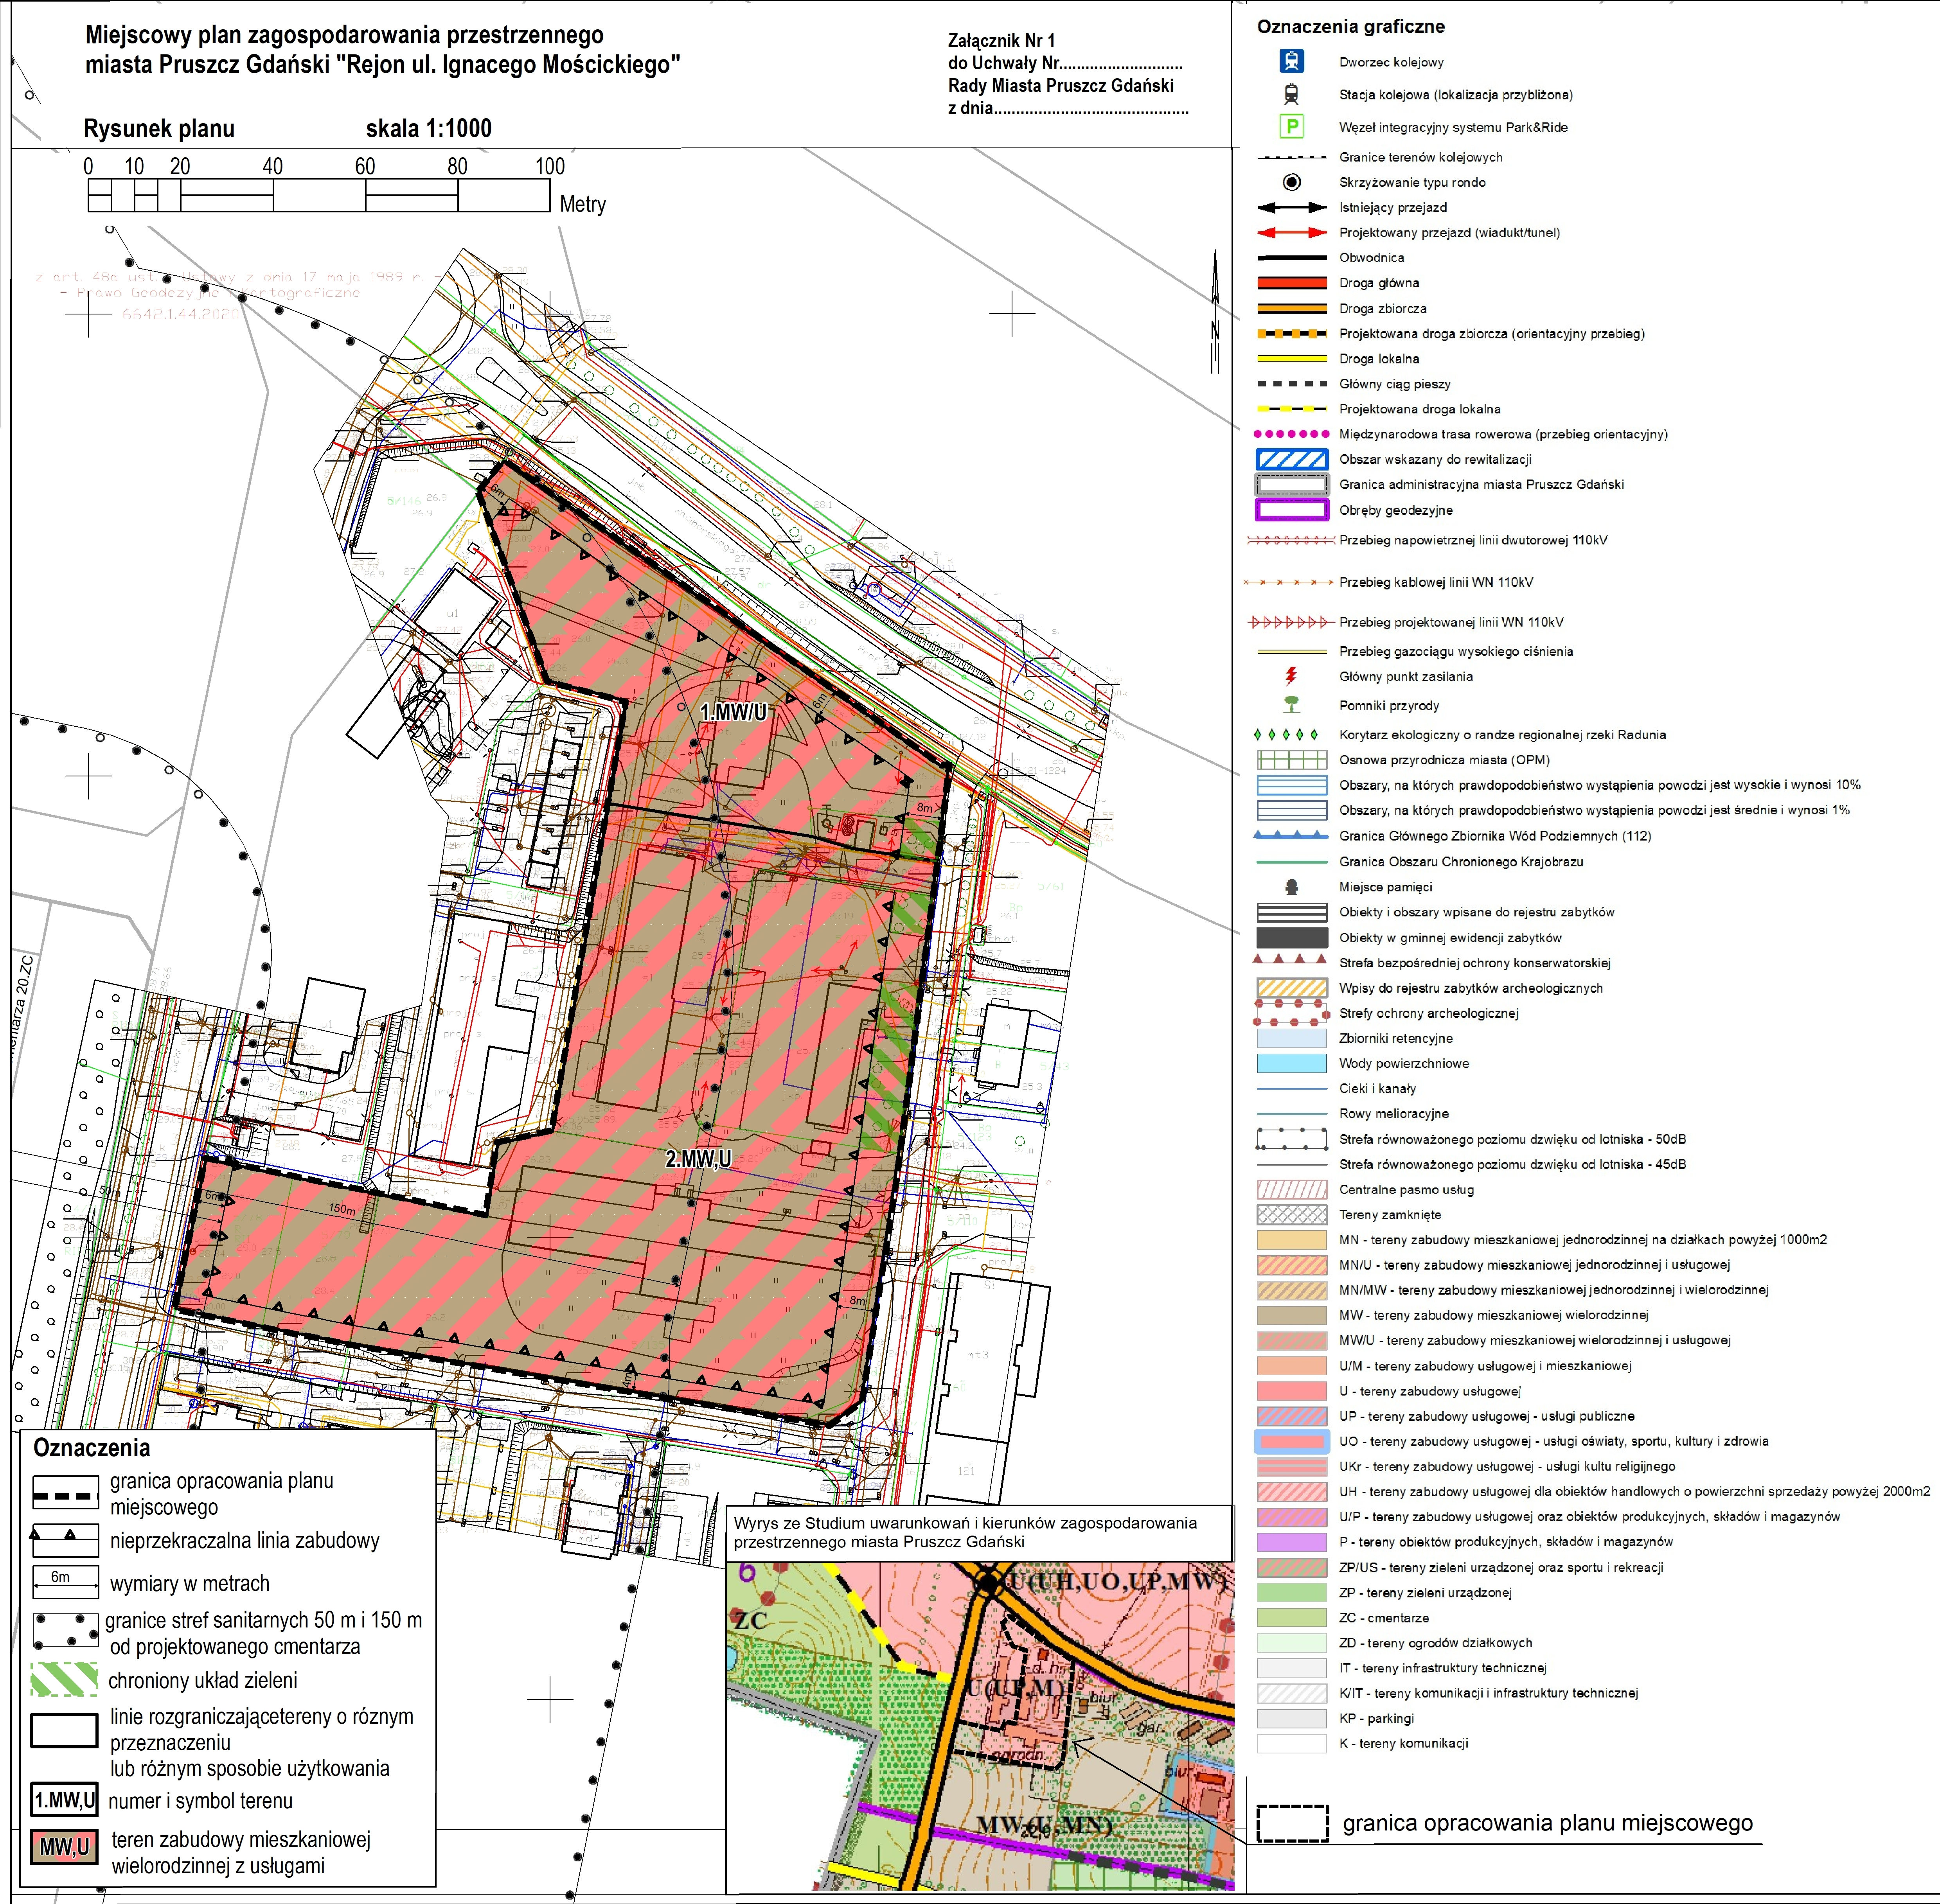 Rysunek planu zagospodarowania przestrzennego miasta Pruszcz Gdański "Rejon ulicy Ignacego Moscickiego"